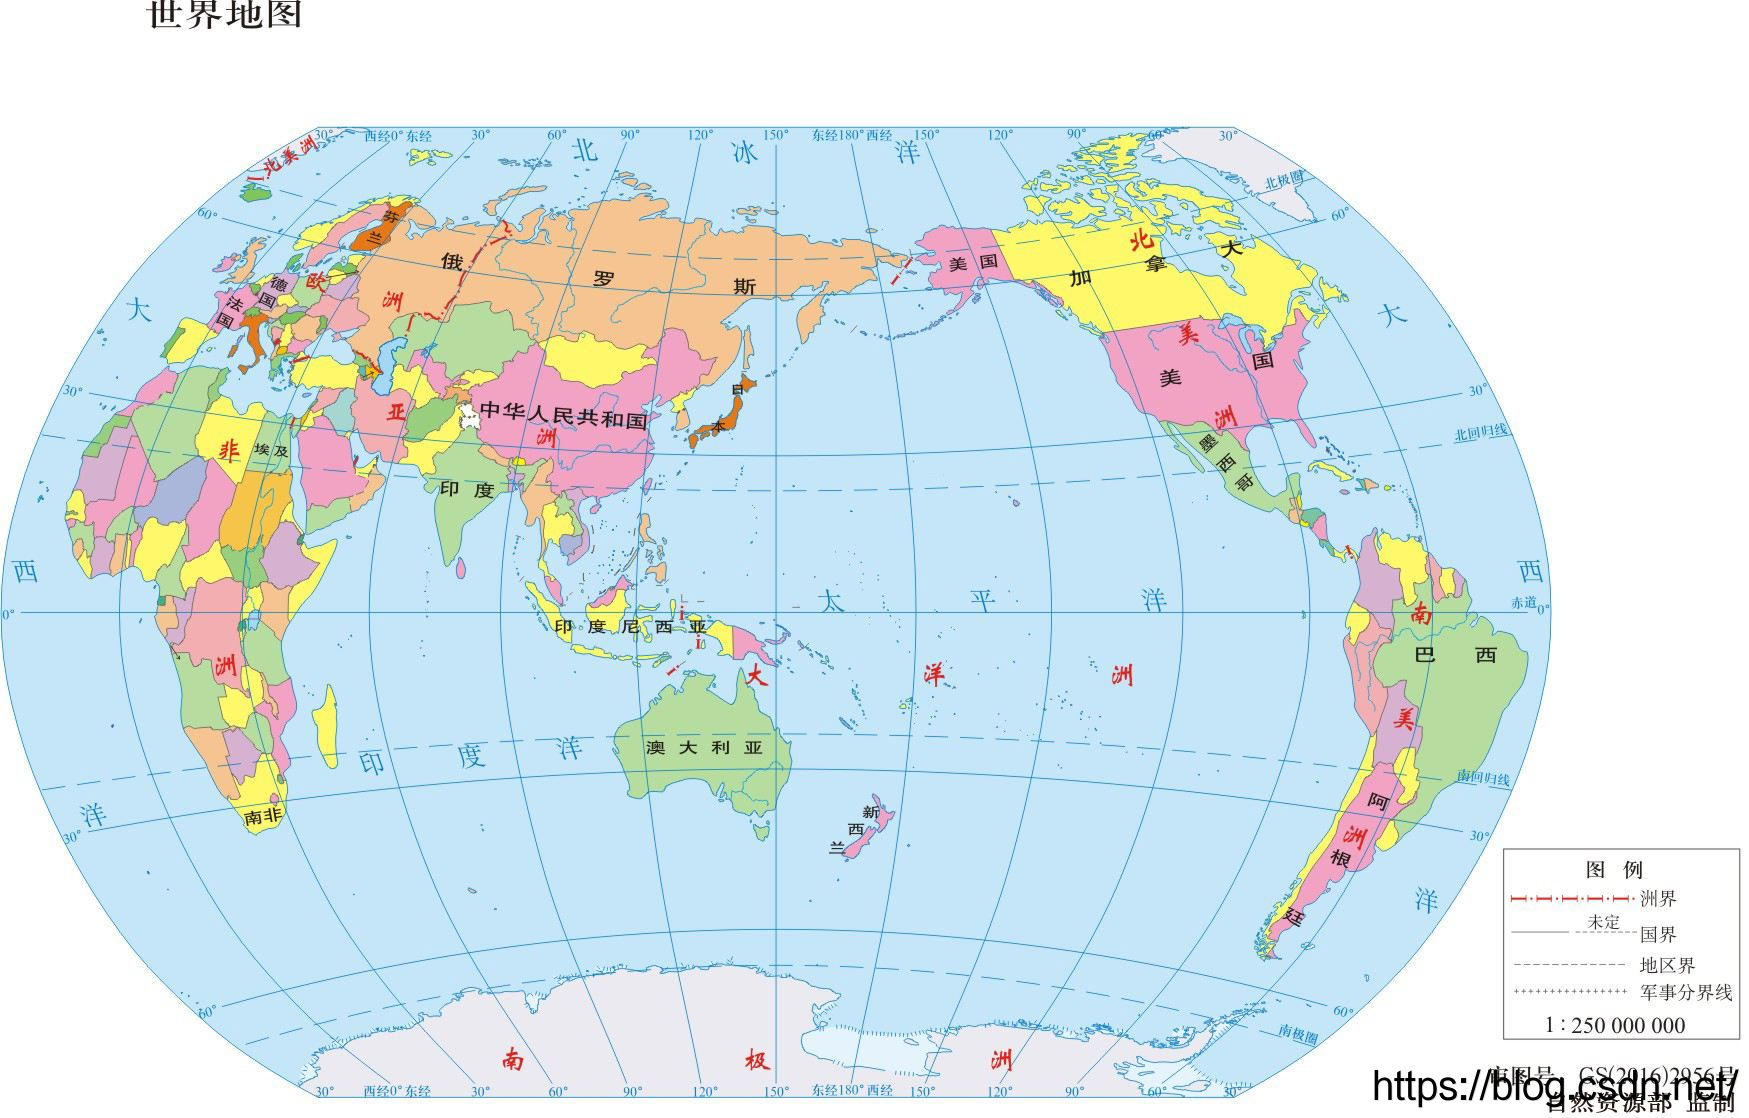 世界十三个区域分布图 世界十三大区域示意图